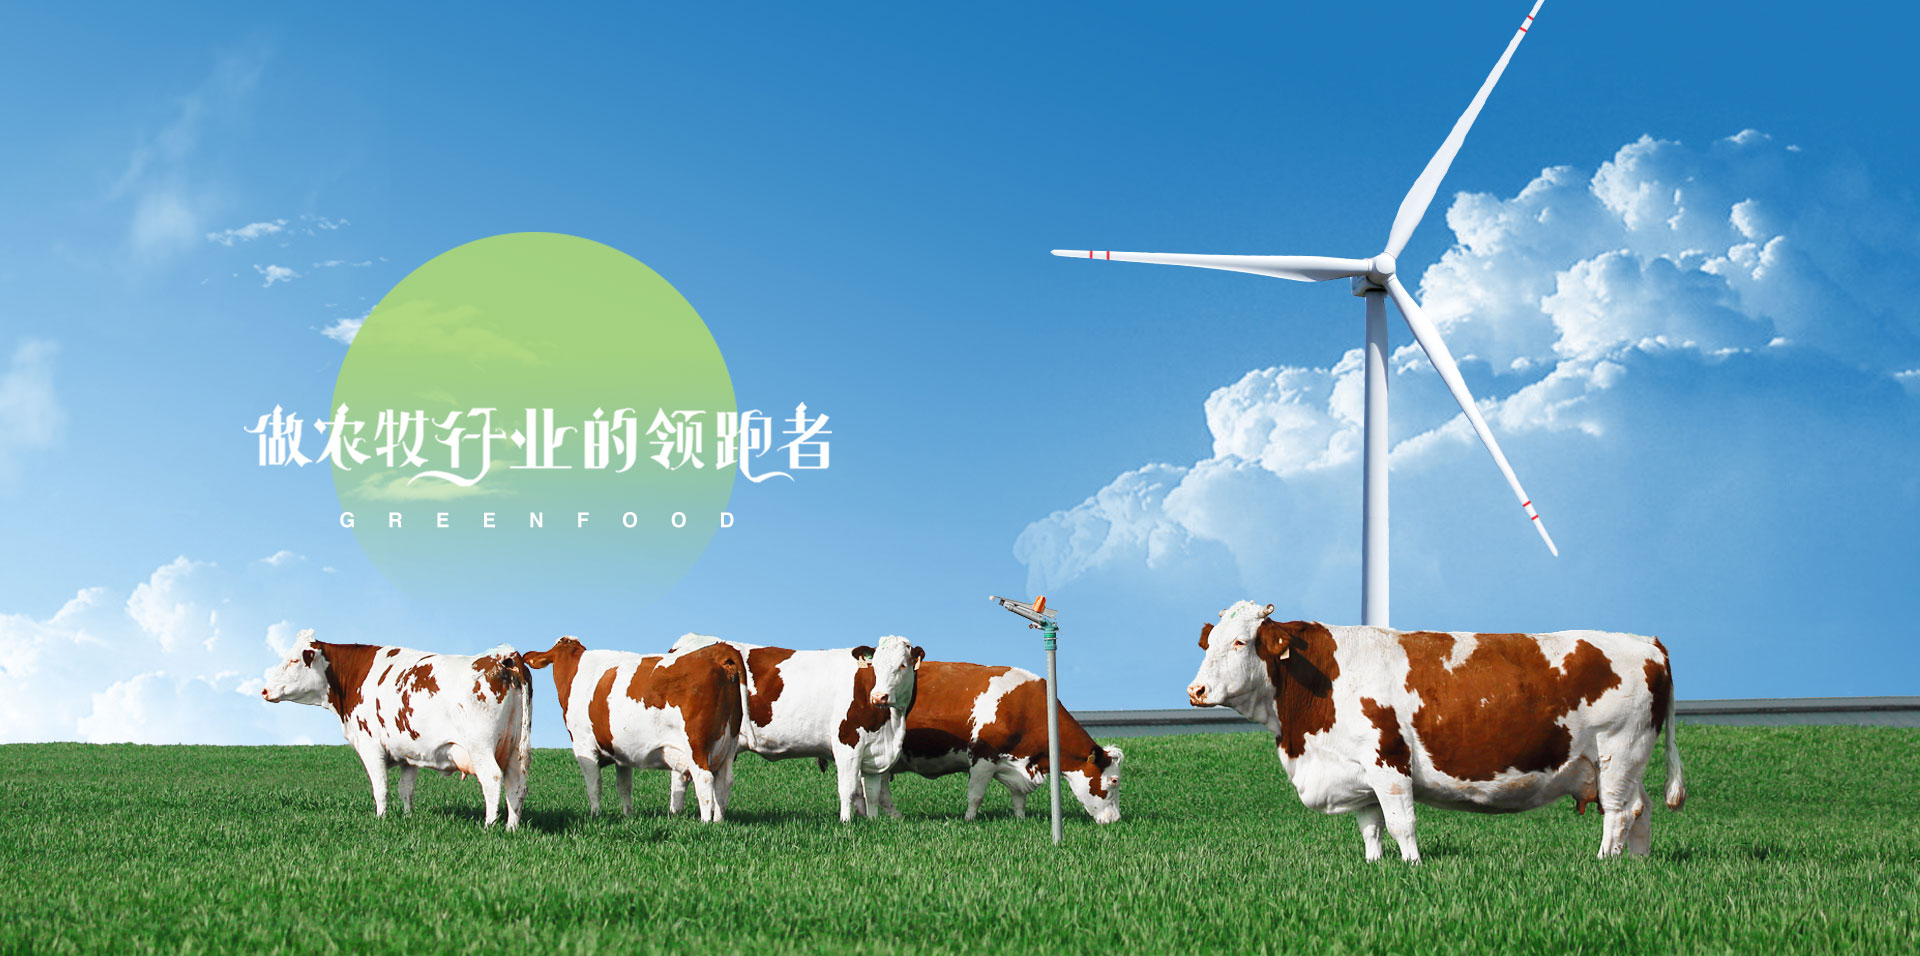 格润富德农牧科技股份有限公司官方网站